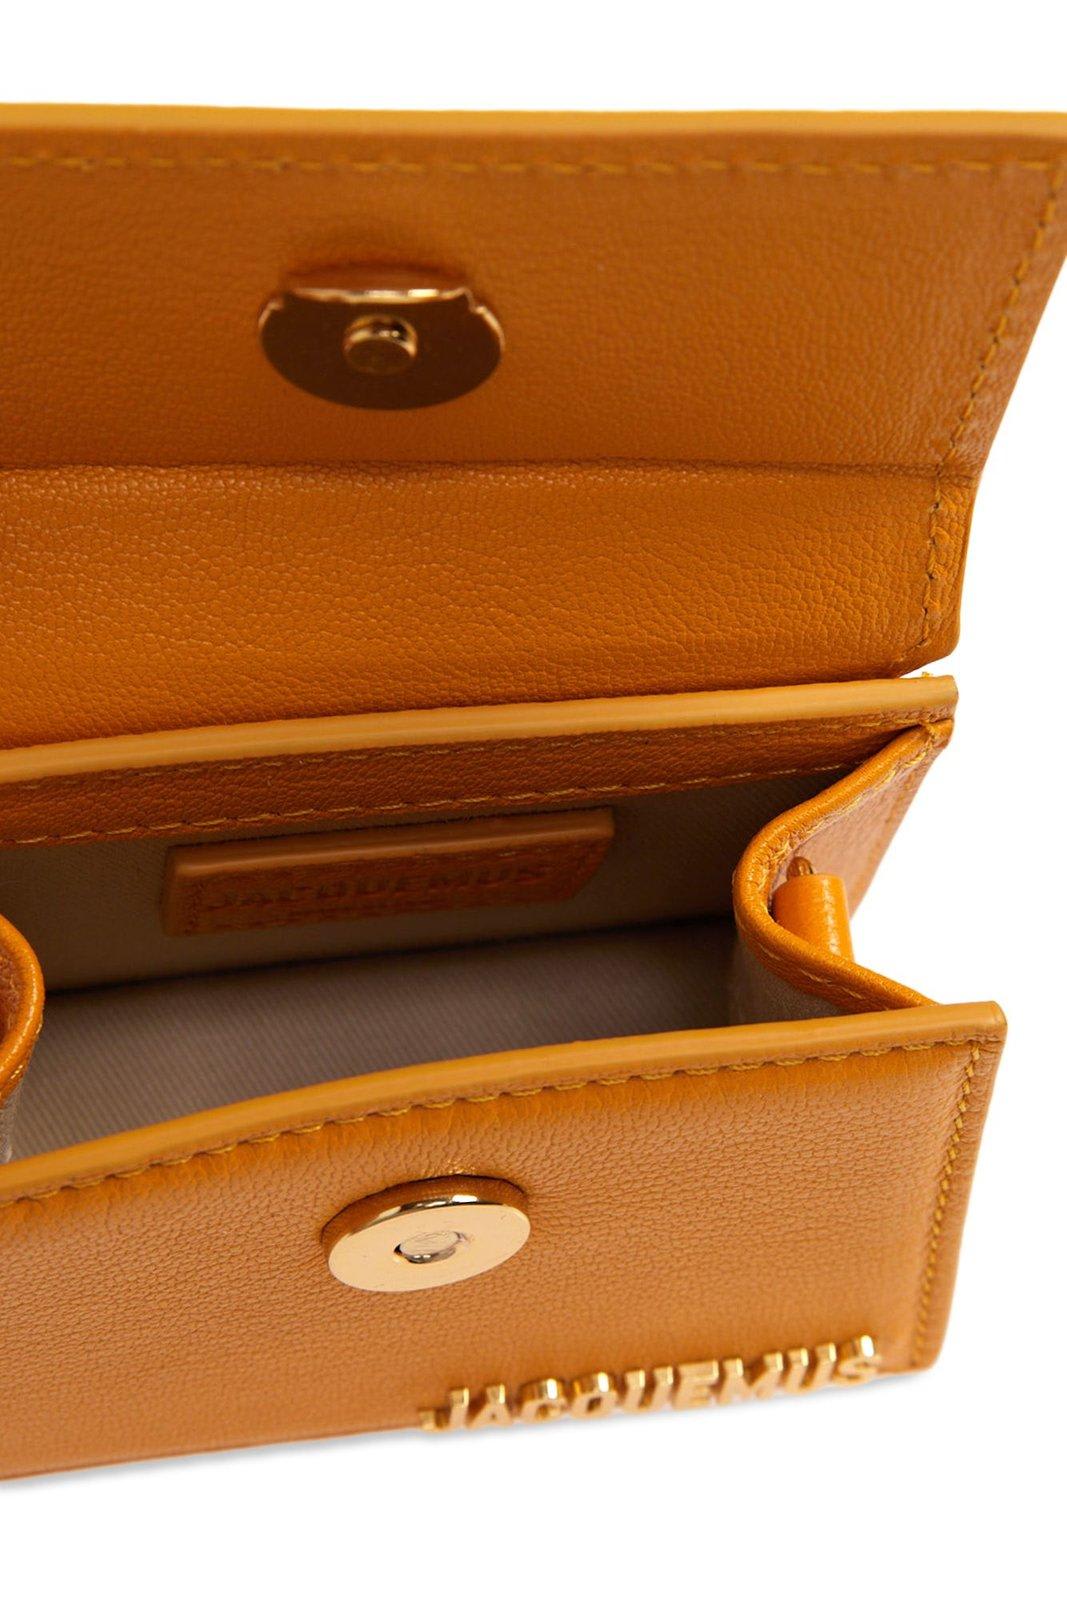 Shop Jacquemus Le Chiquito Signature Mini Handbag In Orange